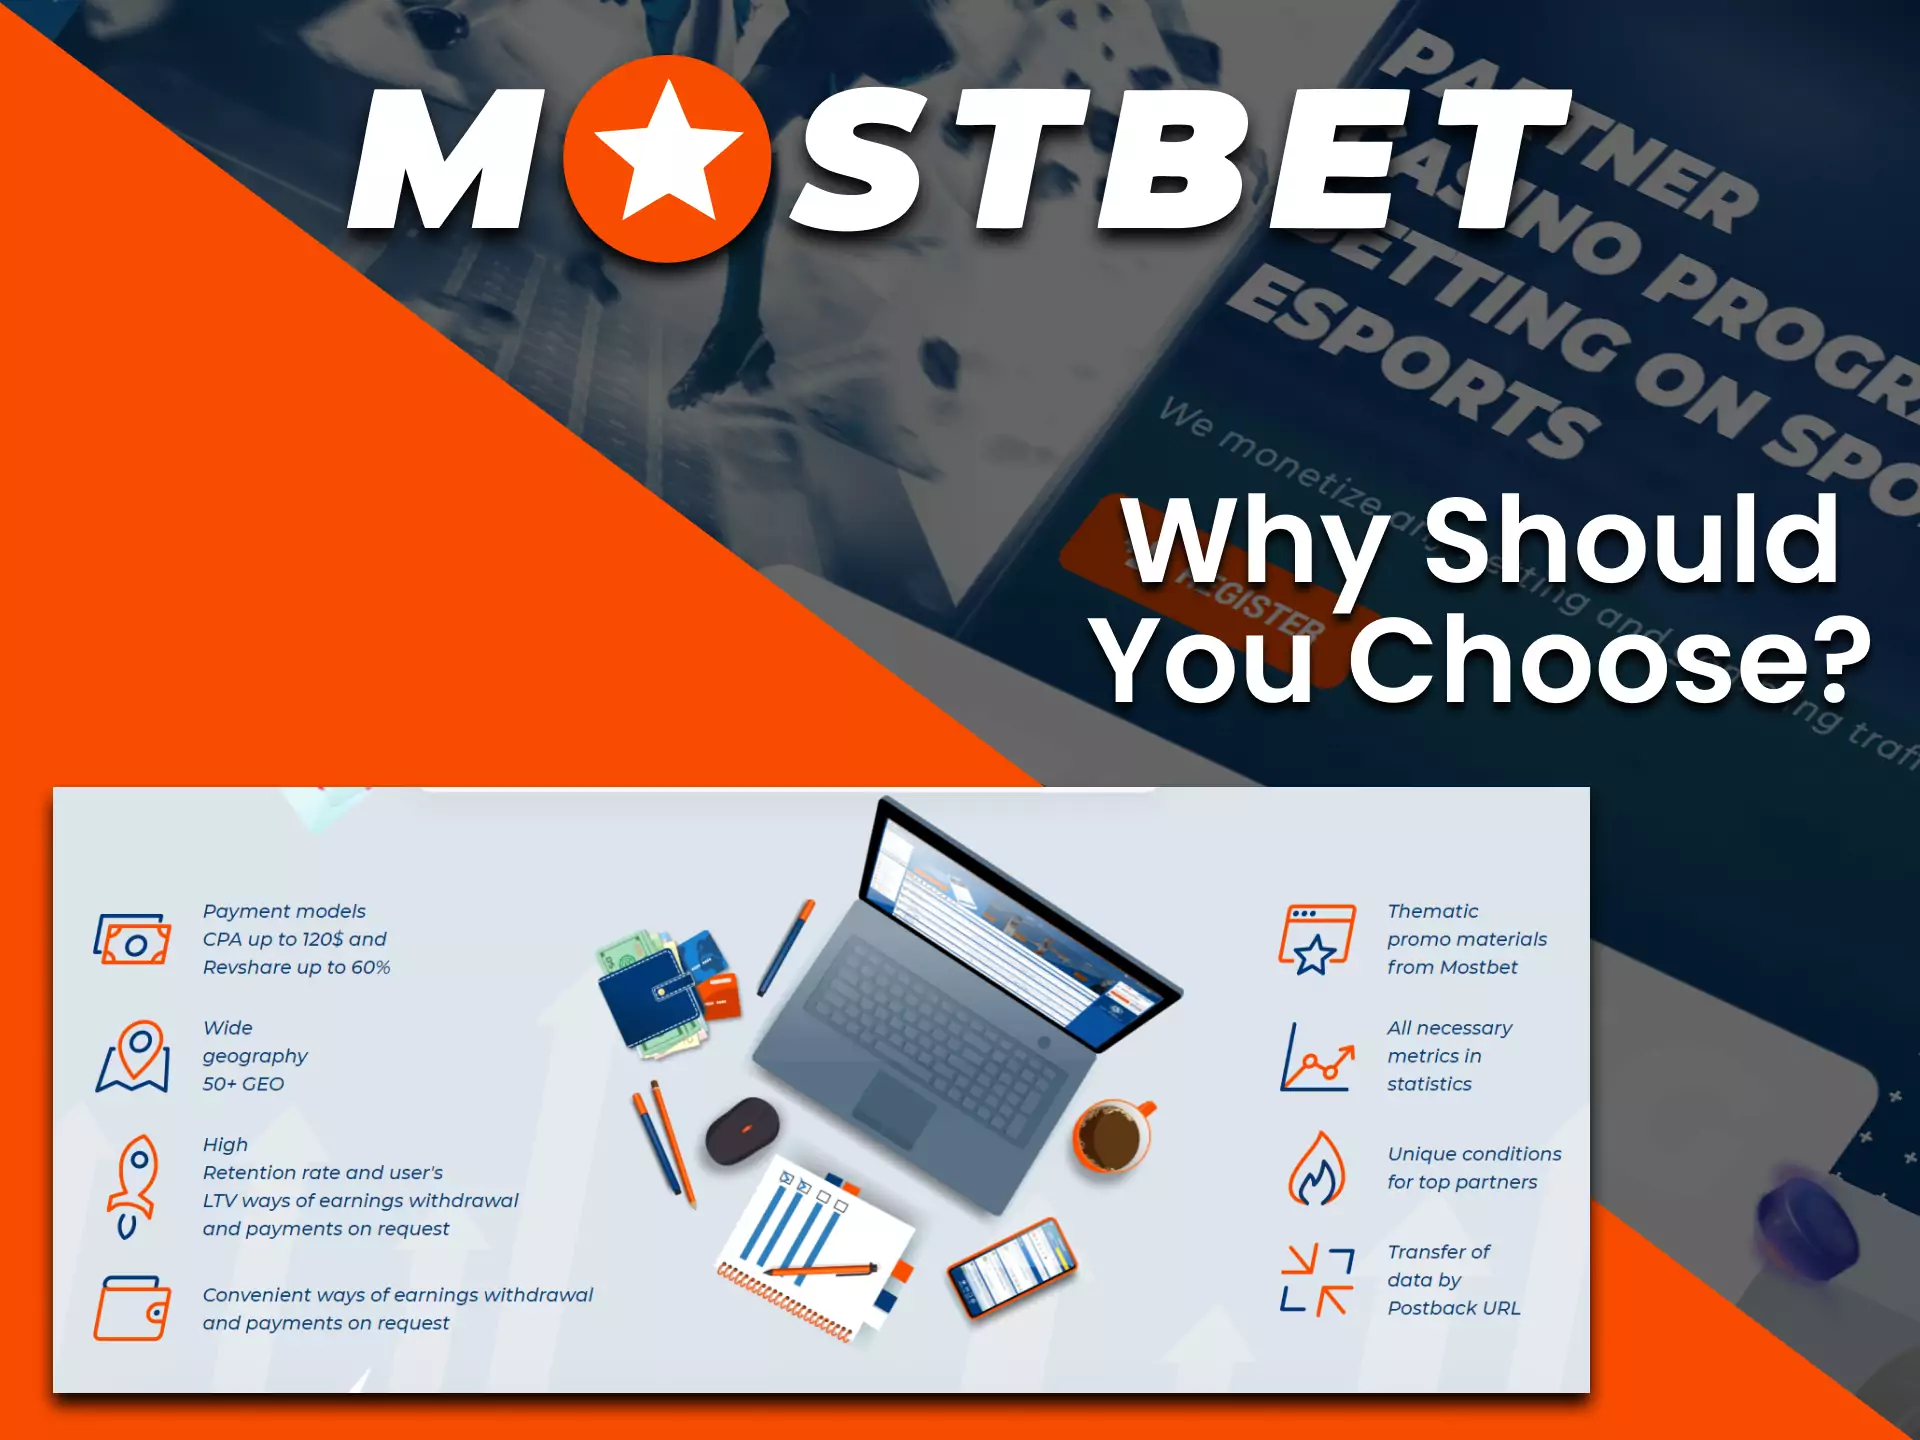 The Best 10 Examples Of Mostbet ofrece una experiencia completa de apuestas y casino en línea, con un proceso de registro fácil, un casino en línea diverso y una aplicación eficiente para iOS. Estos elementos combinados hacen de Mostbet una opción atractiva para los entusiastas